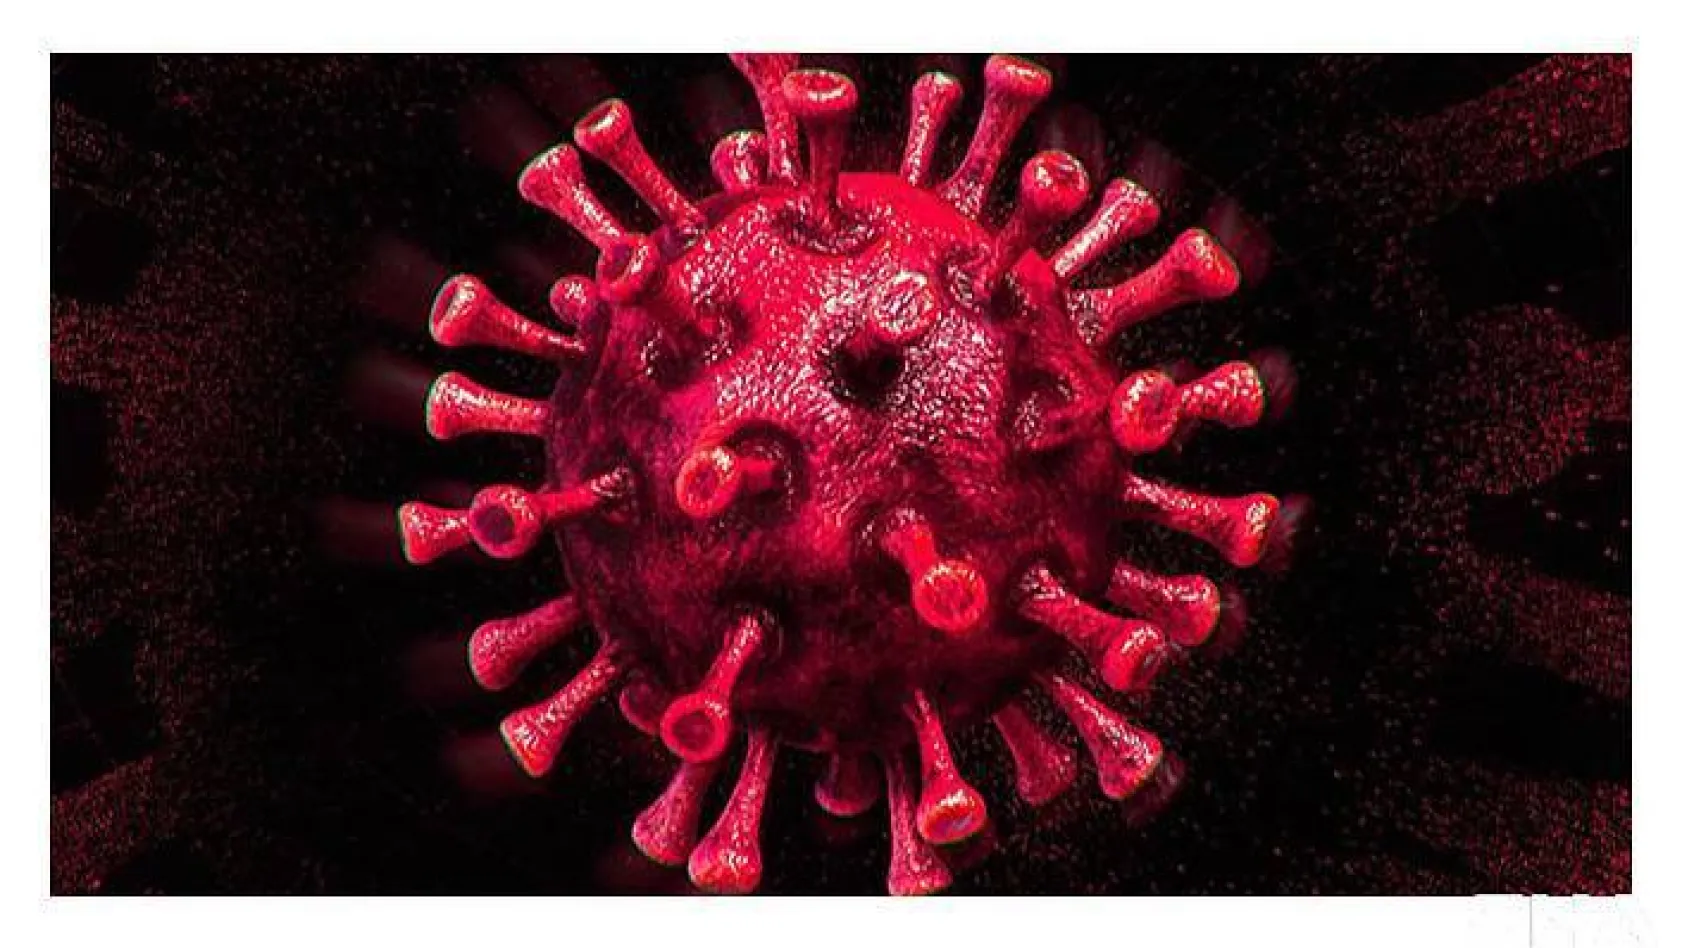 Türkiye'de son 24 saatte 14.556 koronavirüs vakası tespit edildi